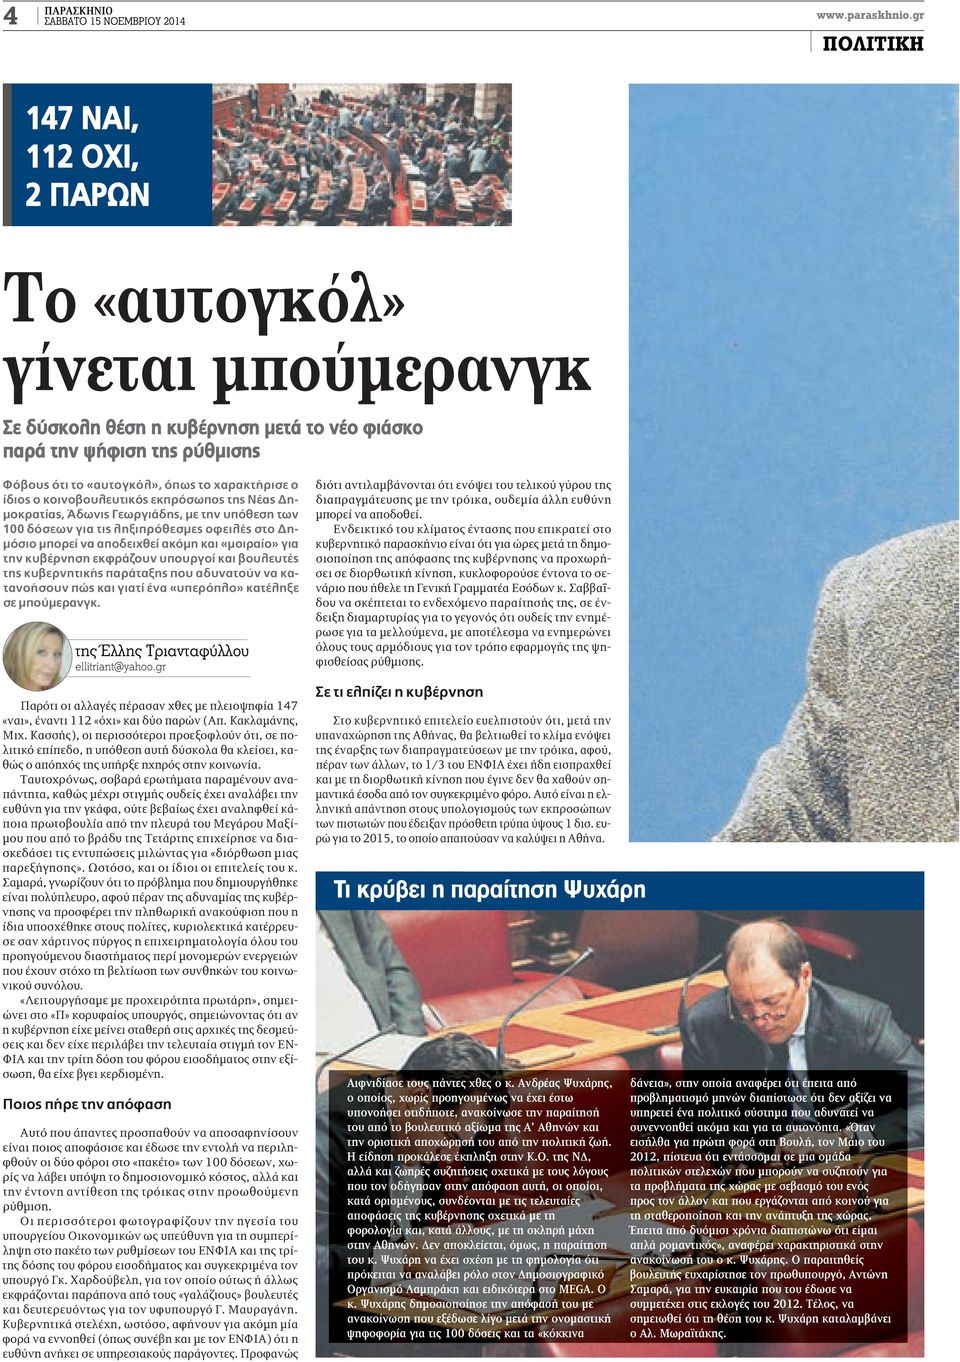 ίδιος ο κοινοβουλευτικός εκπρόσωπος της Νέας Δημοκρατίας, Άδωνις Γεωργιάδης, με την υπόθεση των 100 δόσεων για τις ληξιπρόθεσμες οφειλές στο Δημόσιο μπορεί να αποδειχθεί ακόμη και «μοιραίο» για την